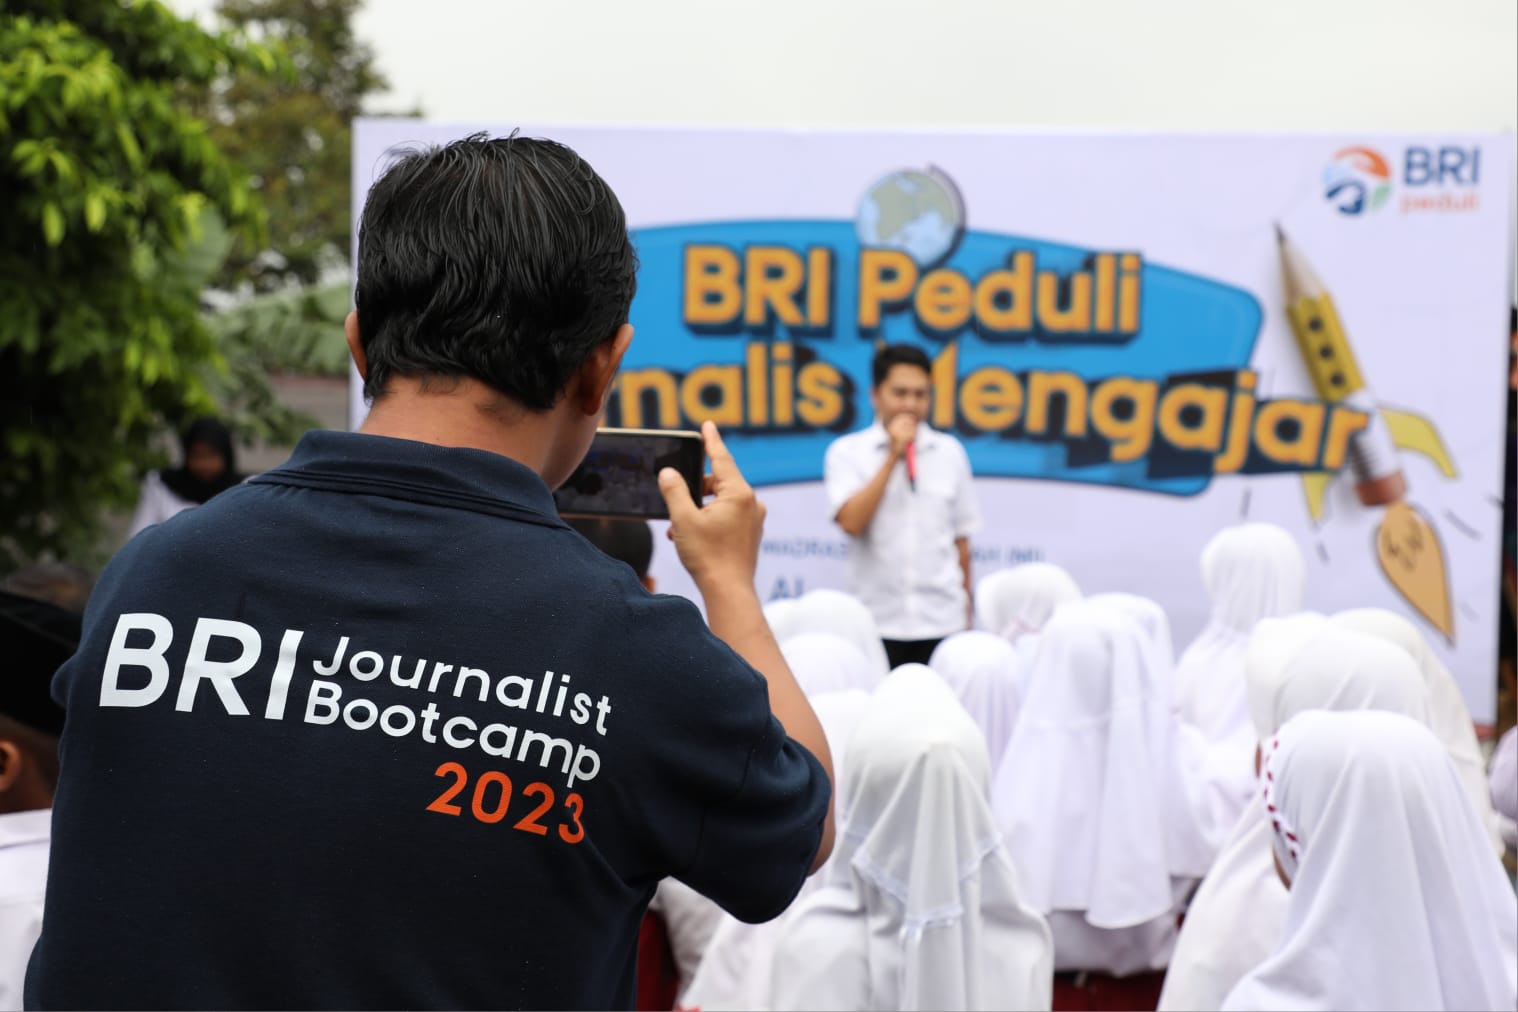 BRI Peduli: Ajak Jurnalis Mengajar Hingga Bantu Renovasi Sekolah